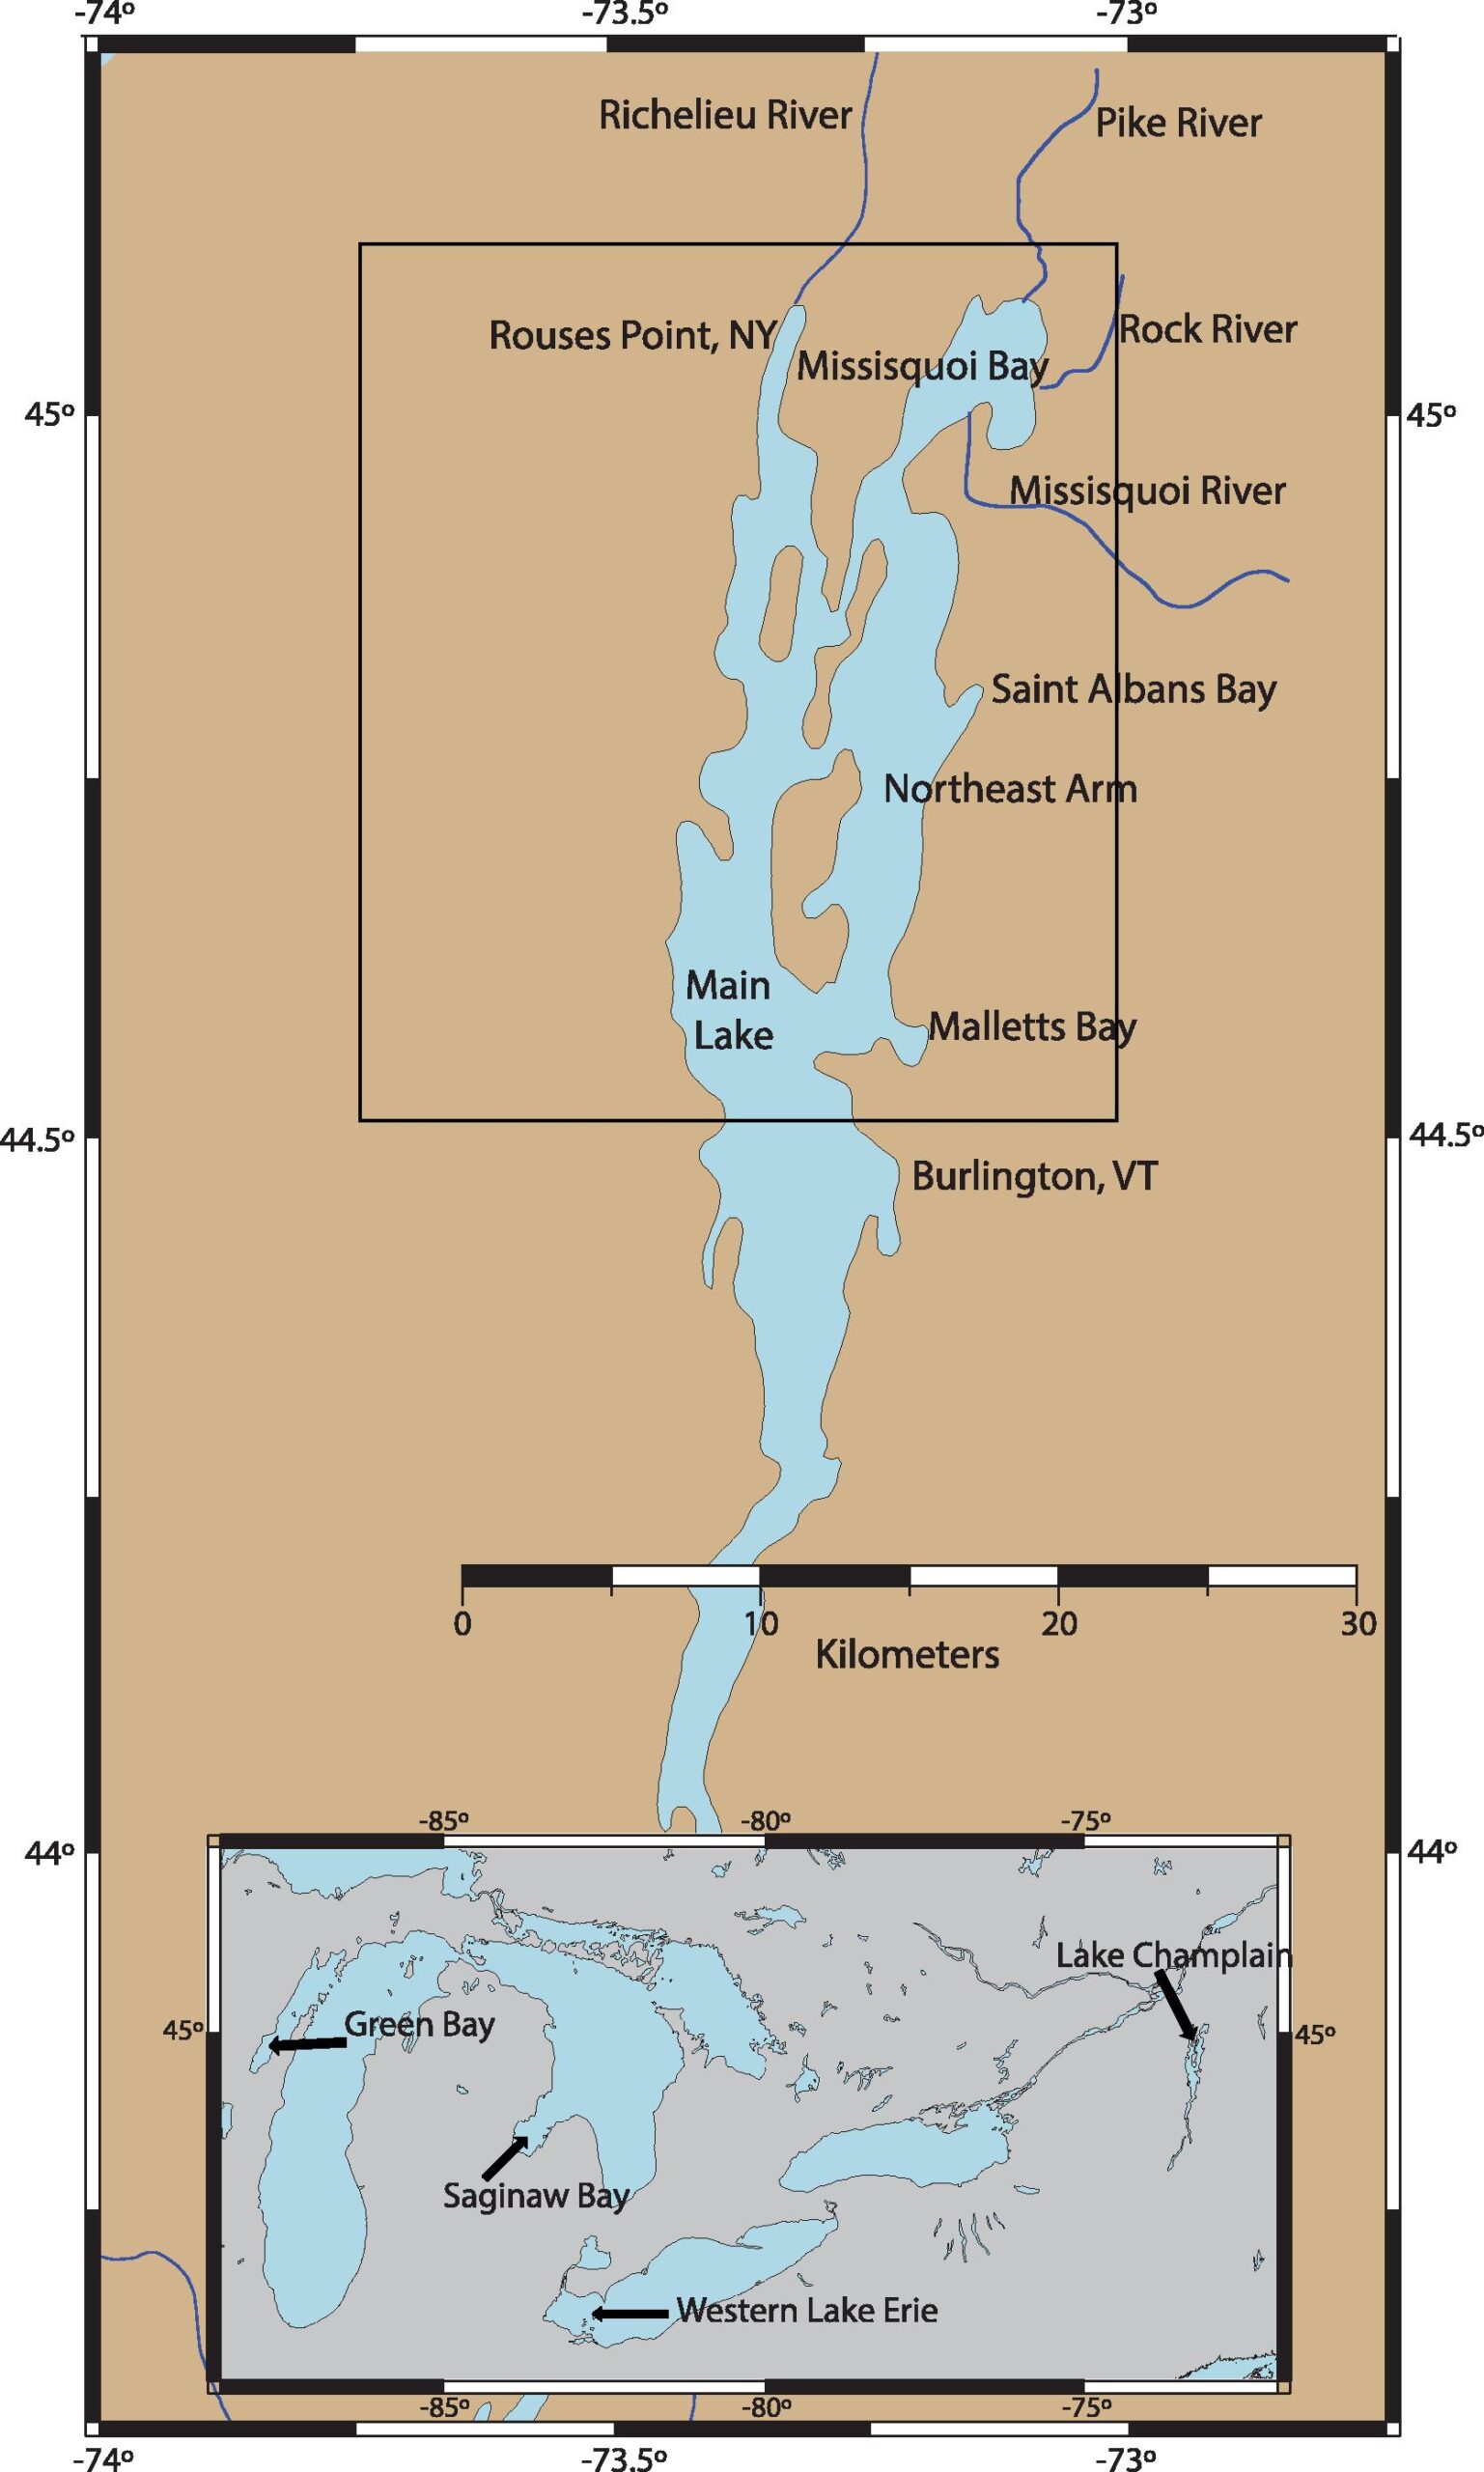 HAB Bloom Forecasting Used in Novel Lake Champlain Study